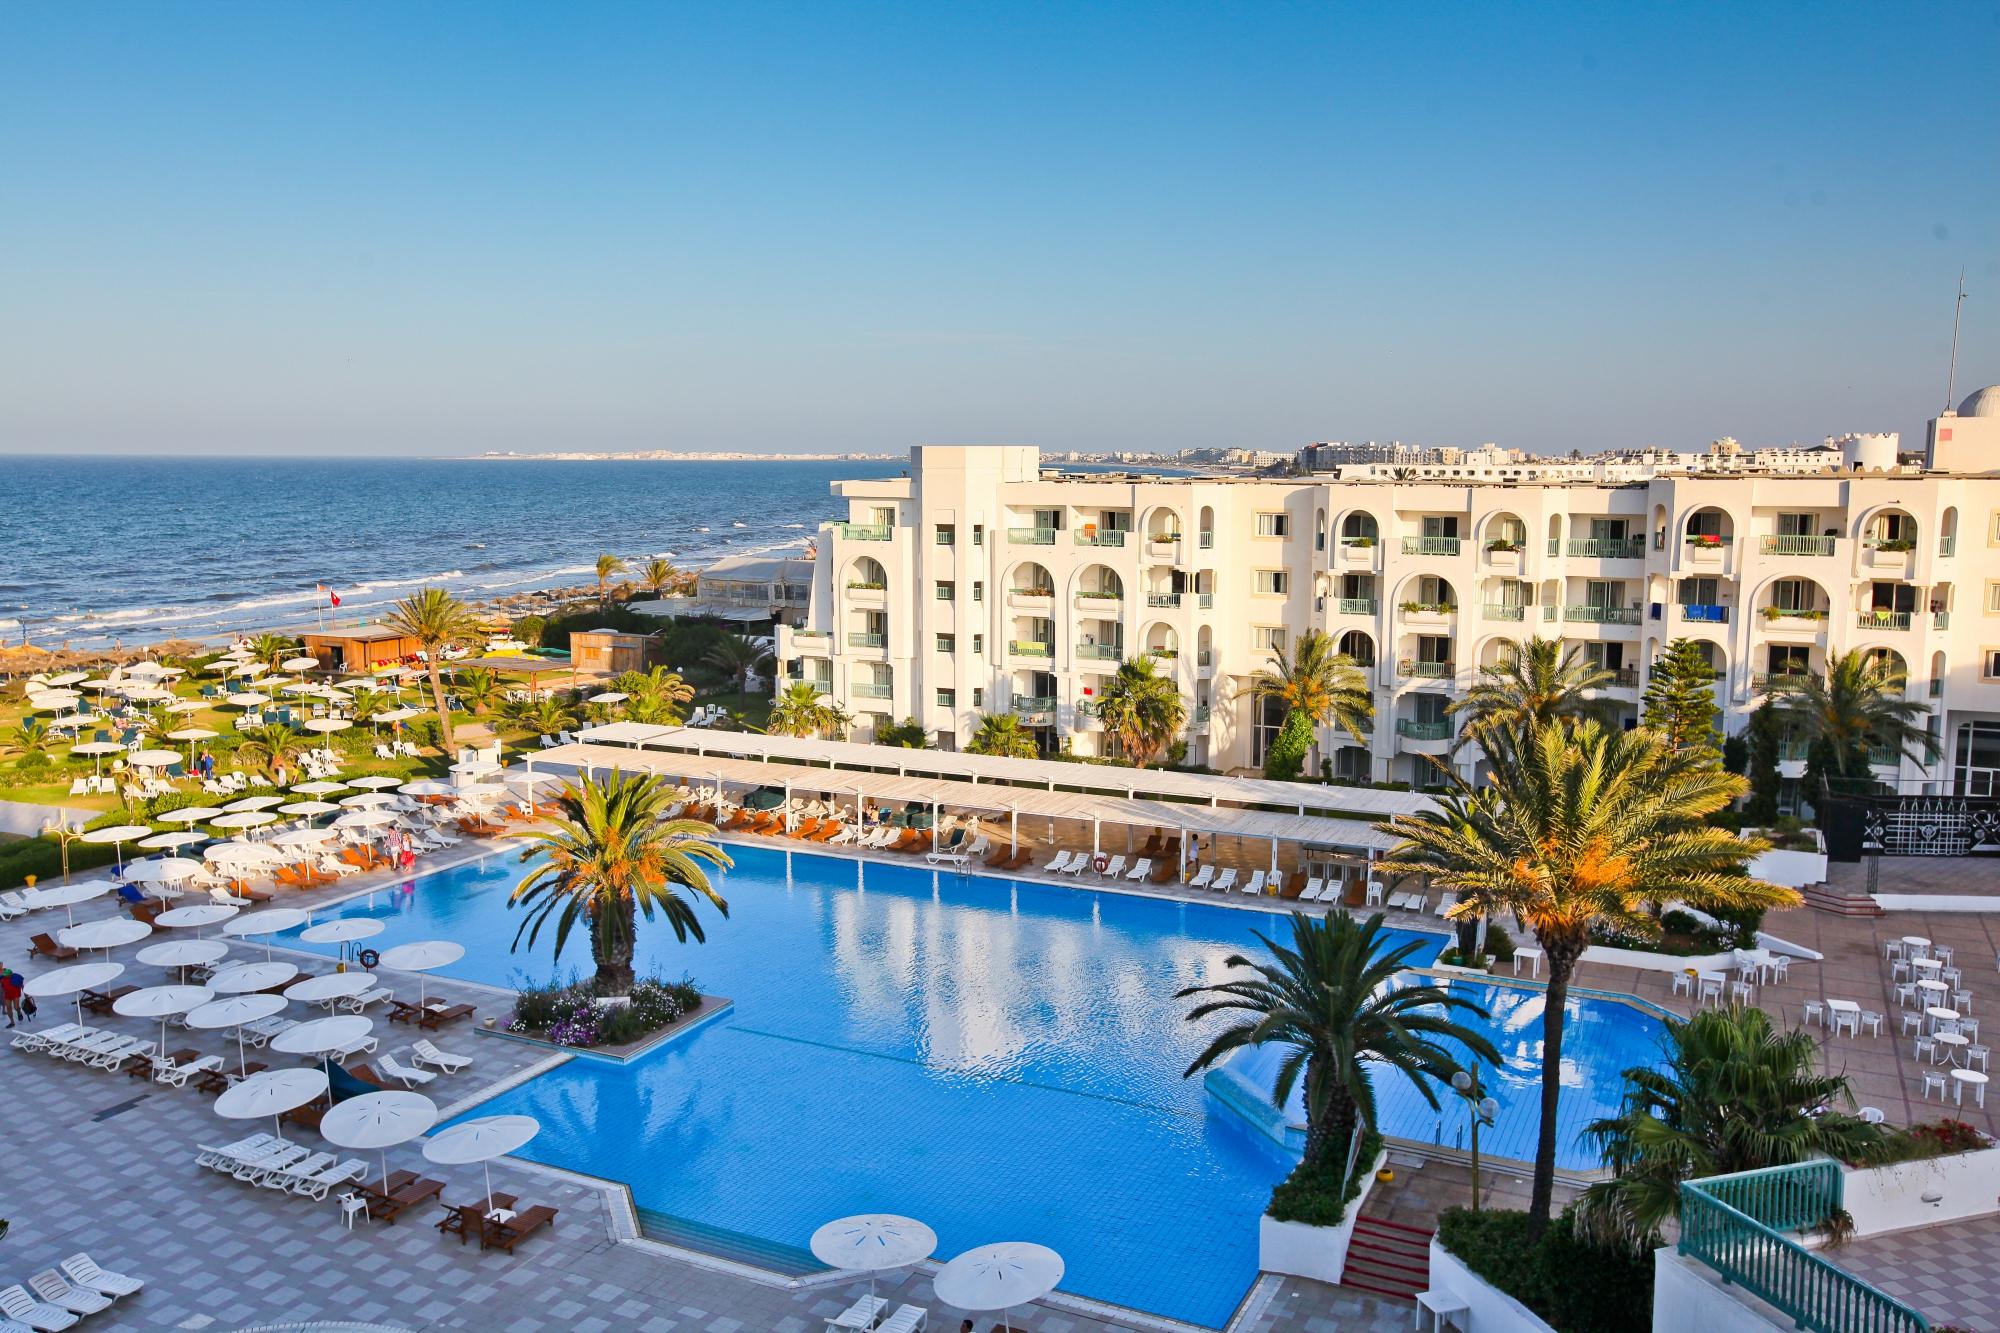 Где отдохнуть в тунисе, лучшие курорты для отдыха у моря и погода